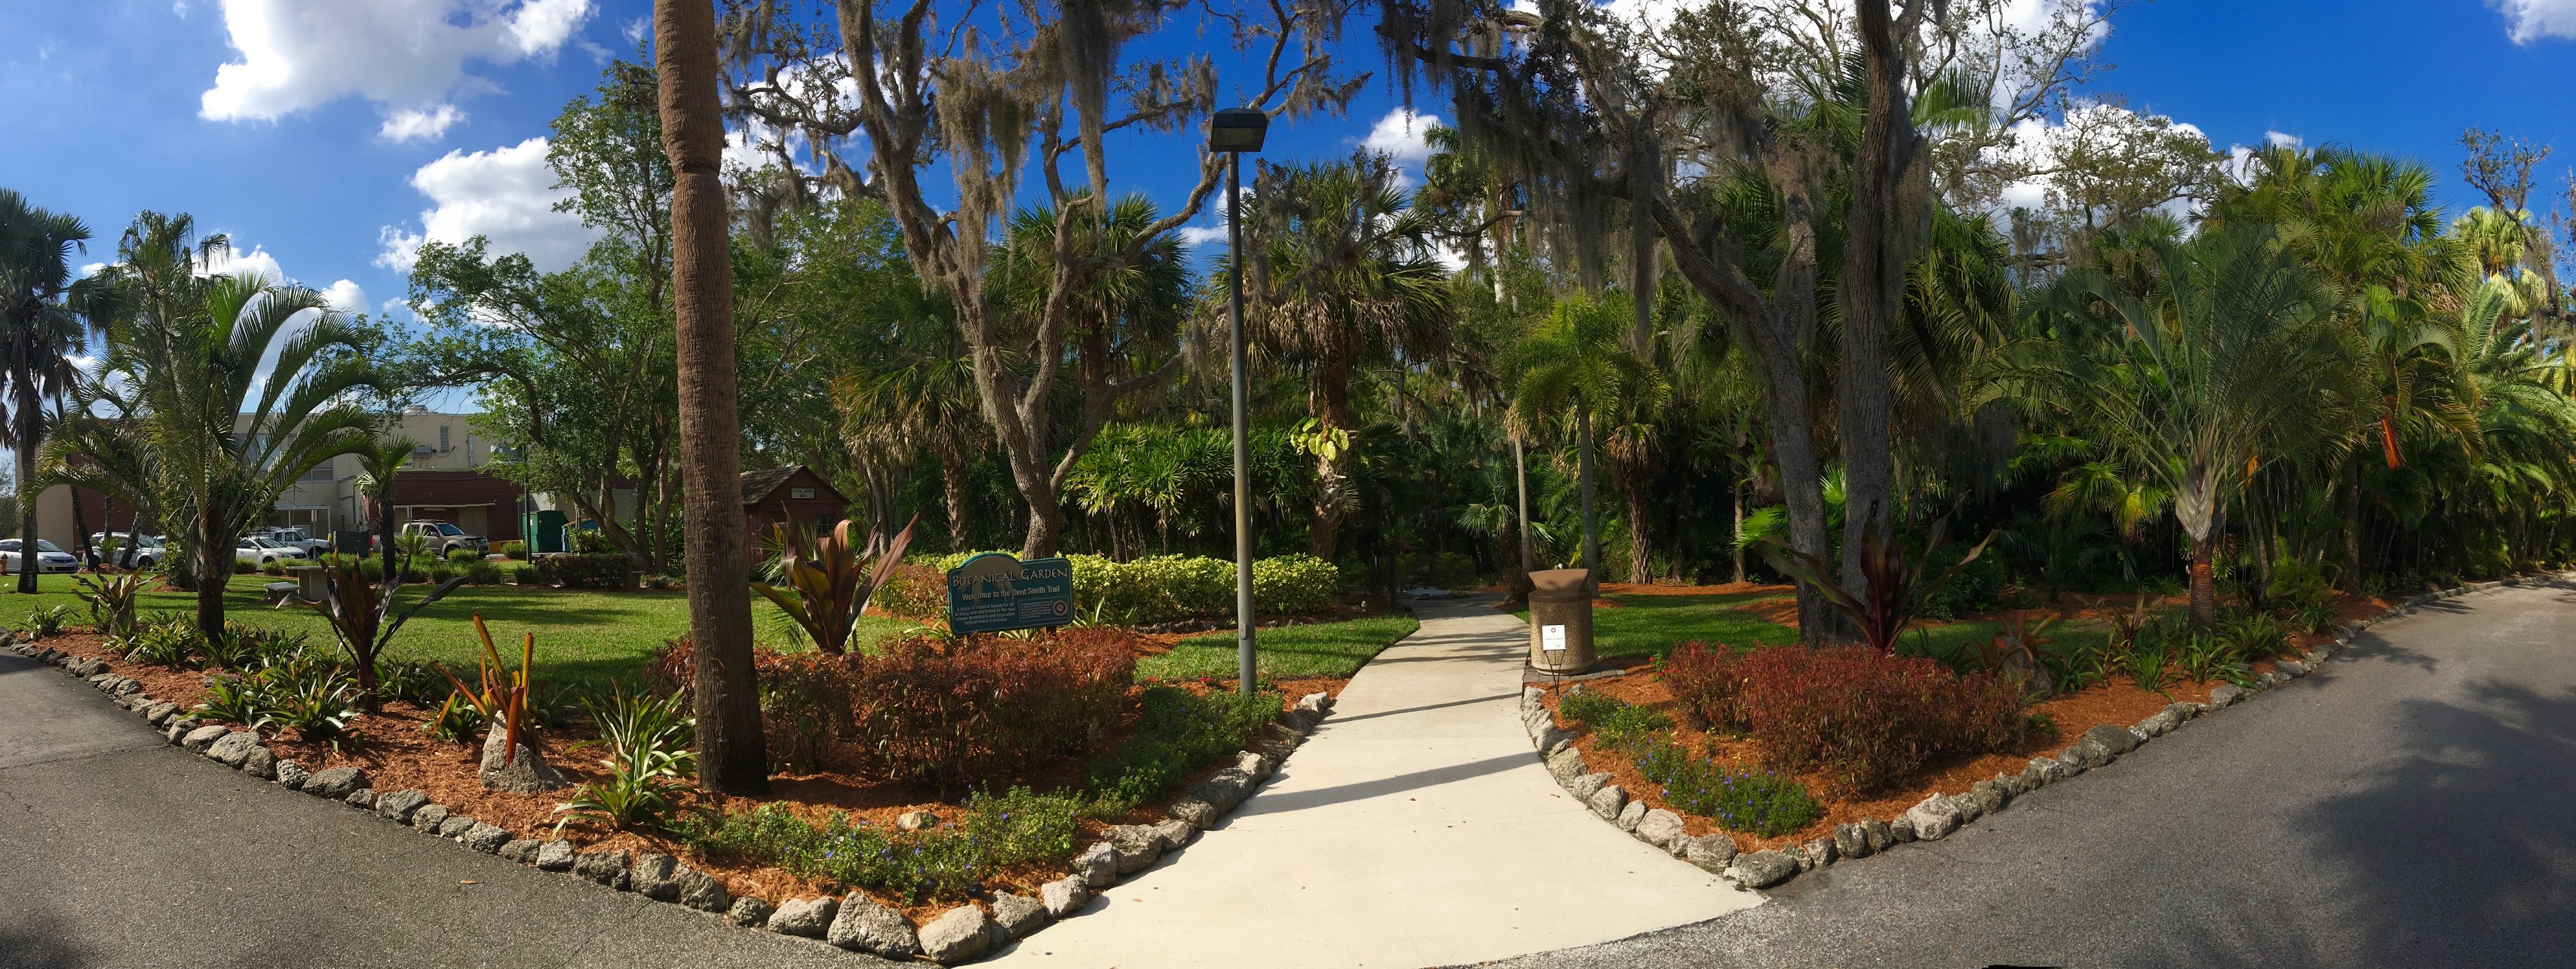 Botanical Garden | Florida Tech